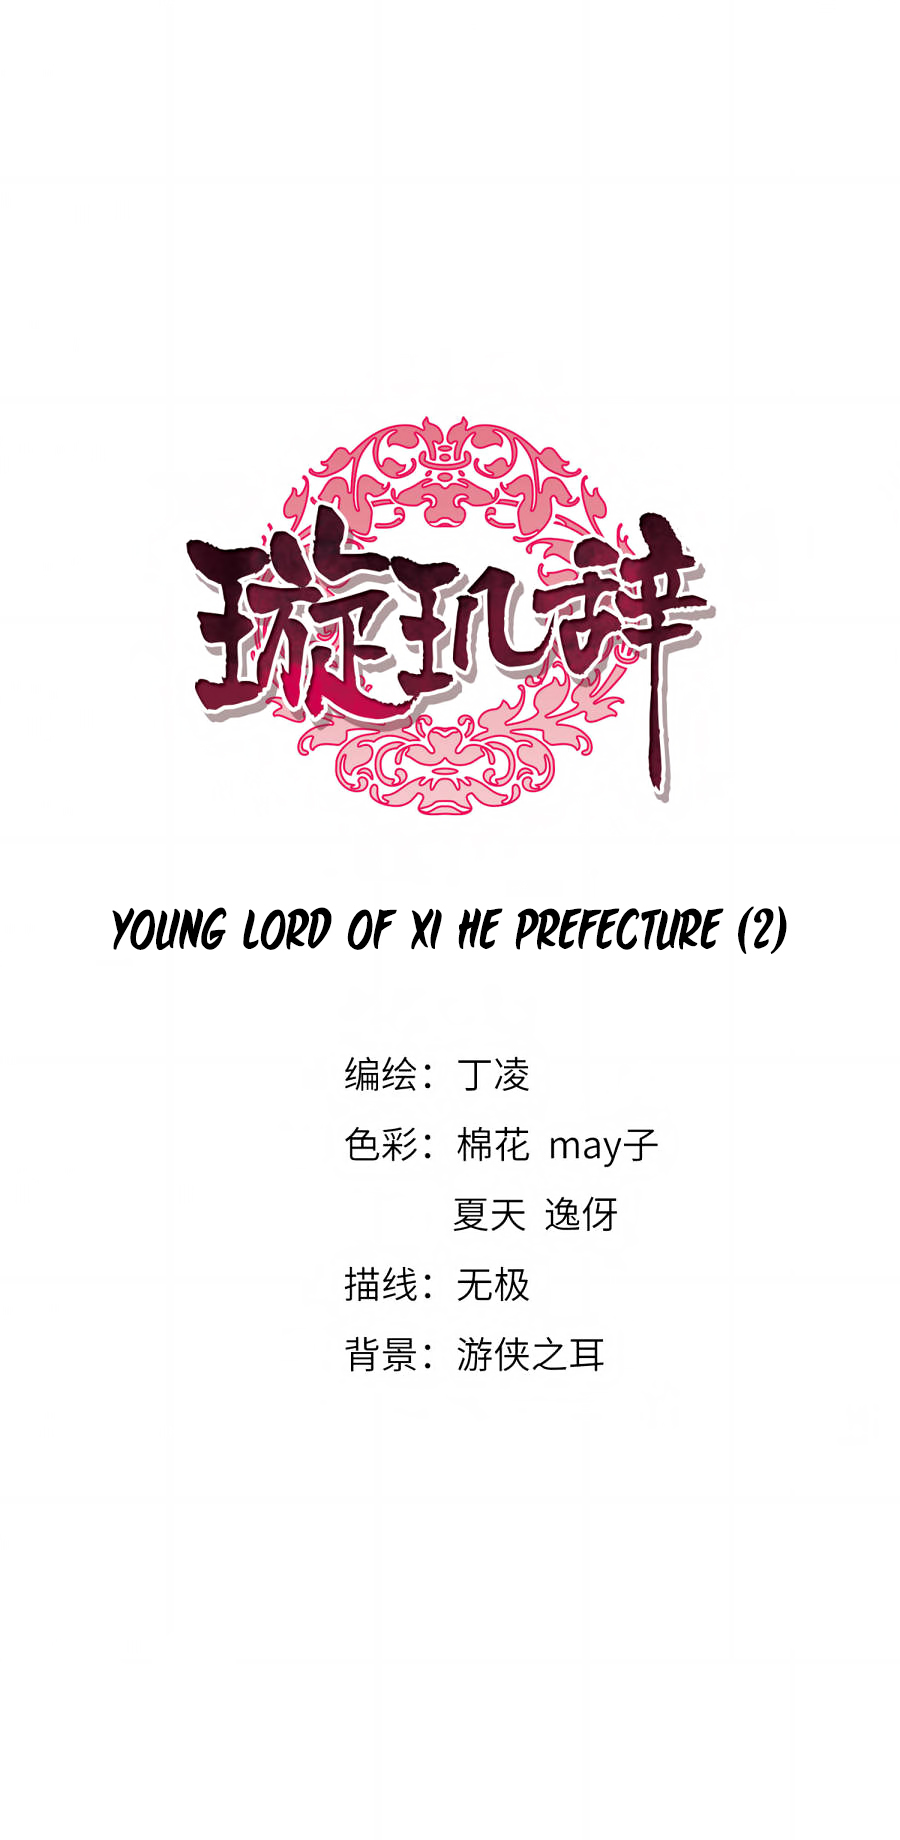 Xuan Ji Ci Ch. 135 Young Lord of Xi He Prefecture (2)